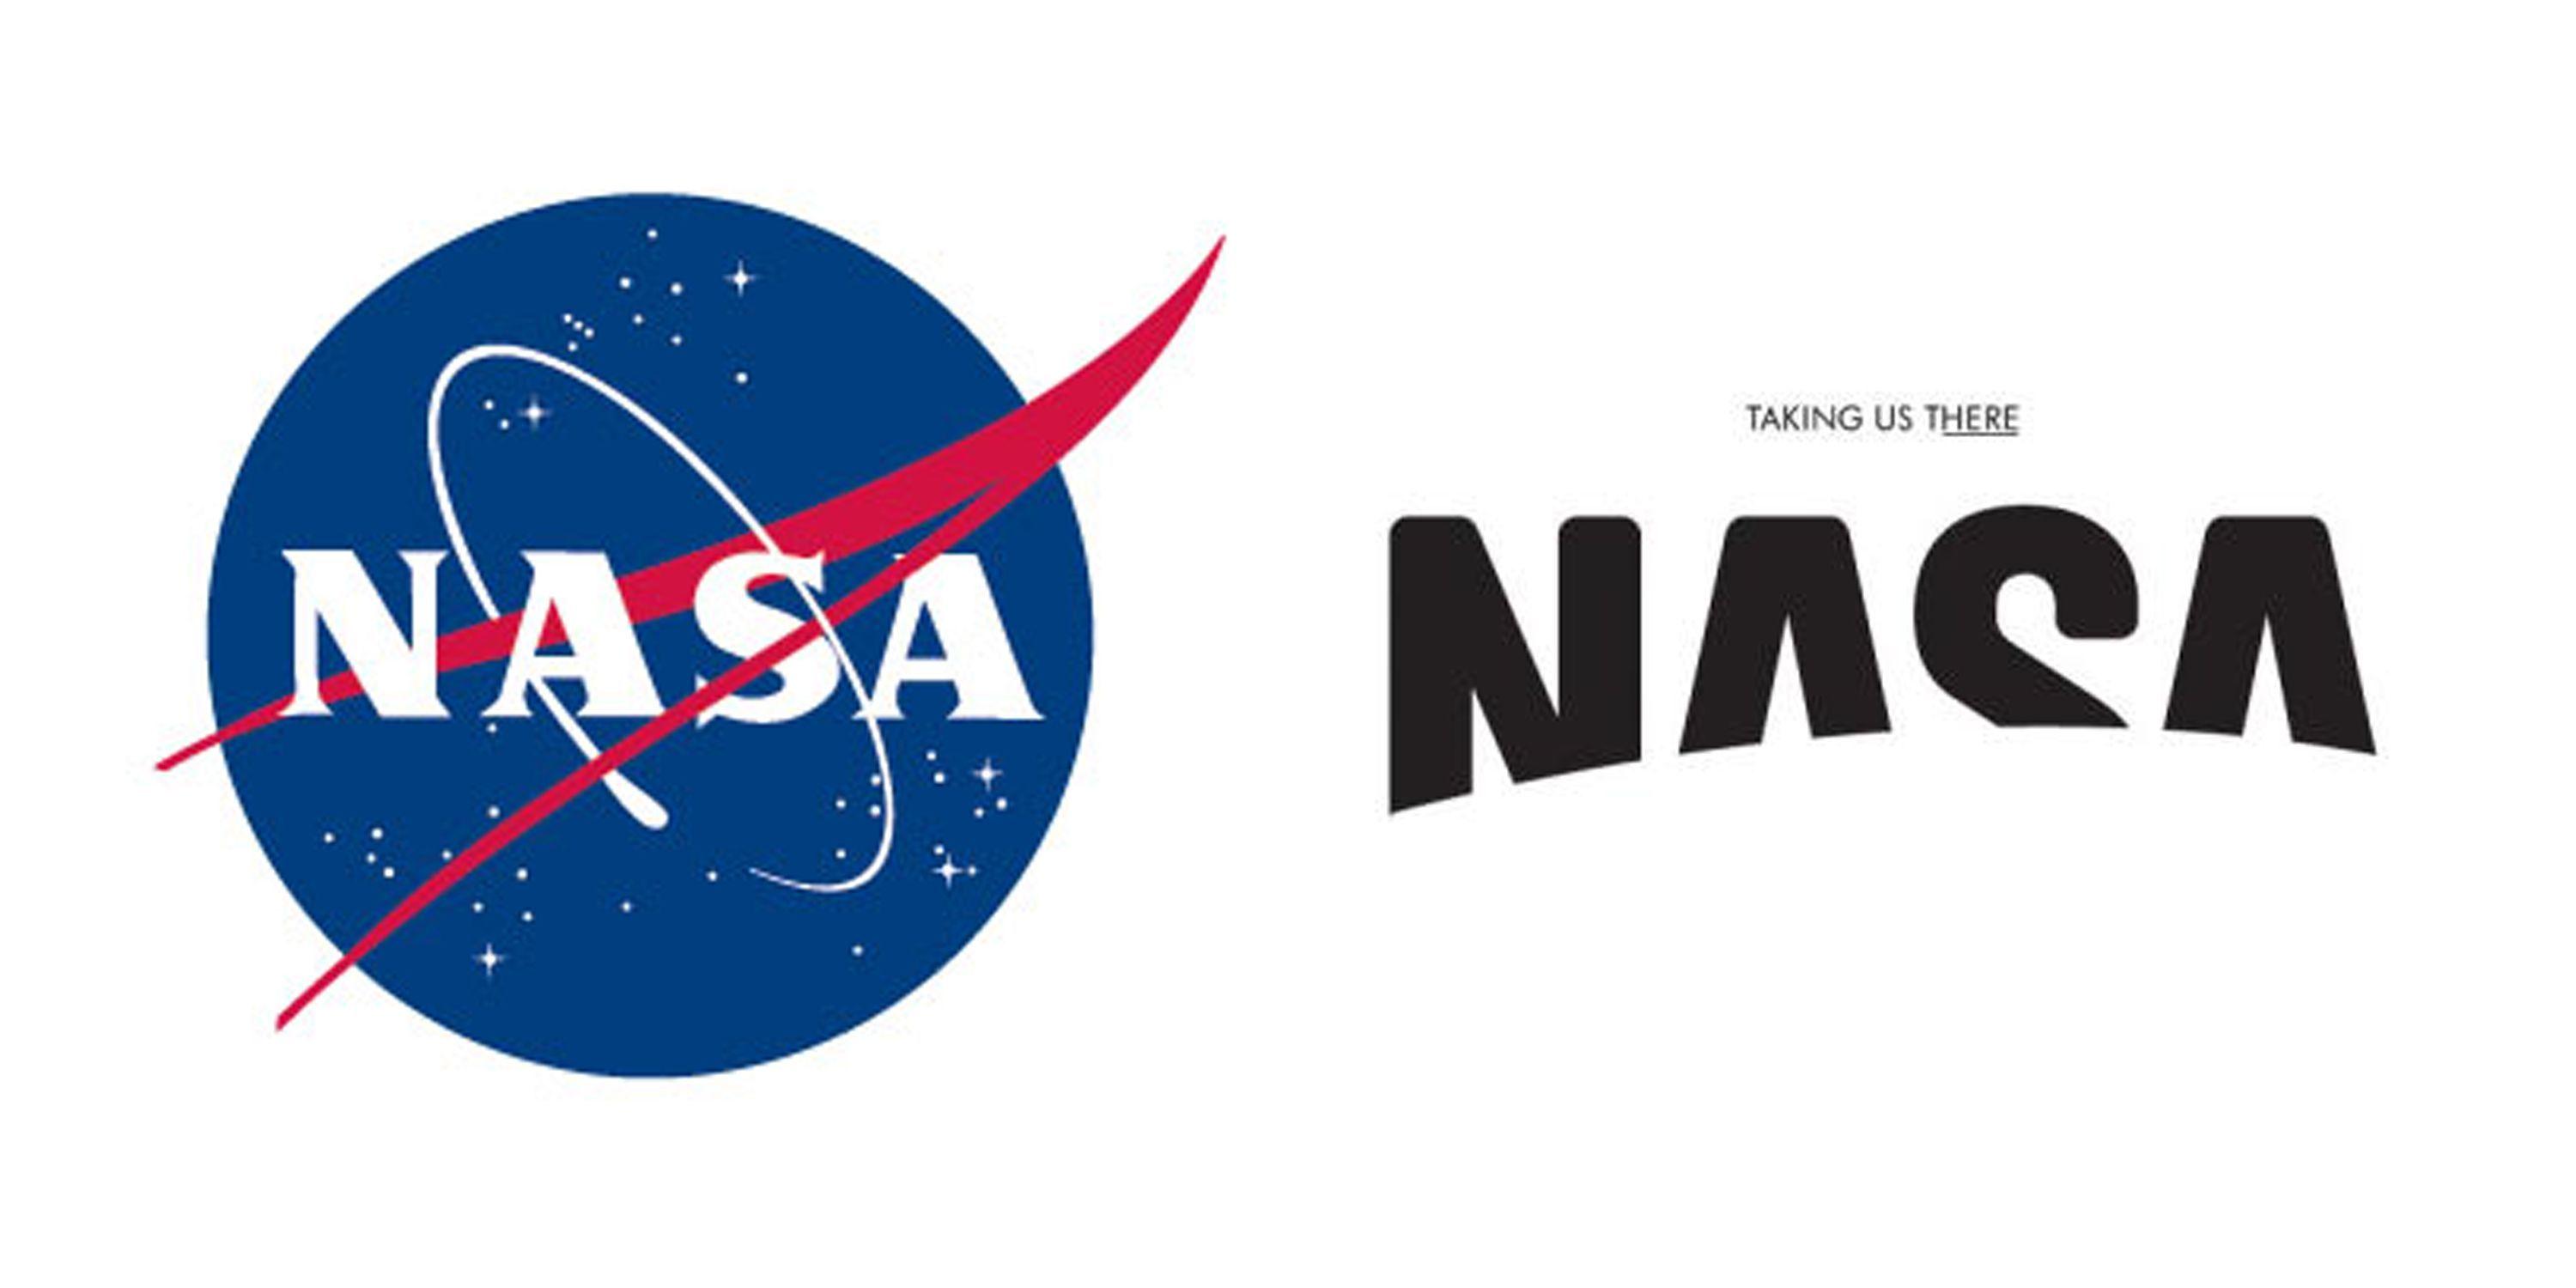 NACA NASA Logo - A redesign of the NASA logo done by Base Design Firm. John McCoy